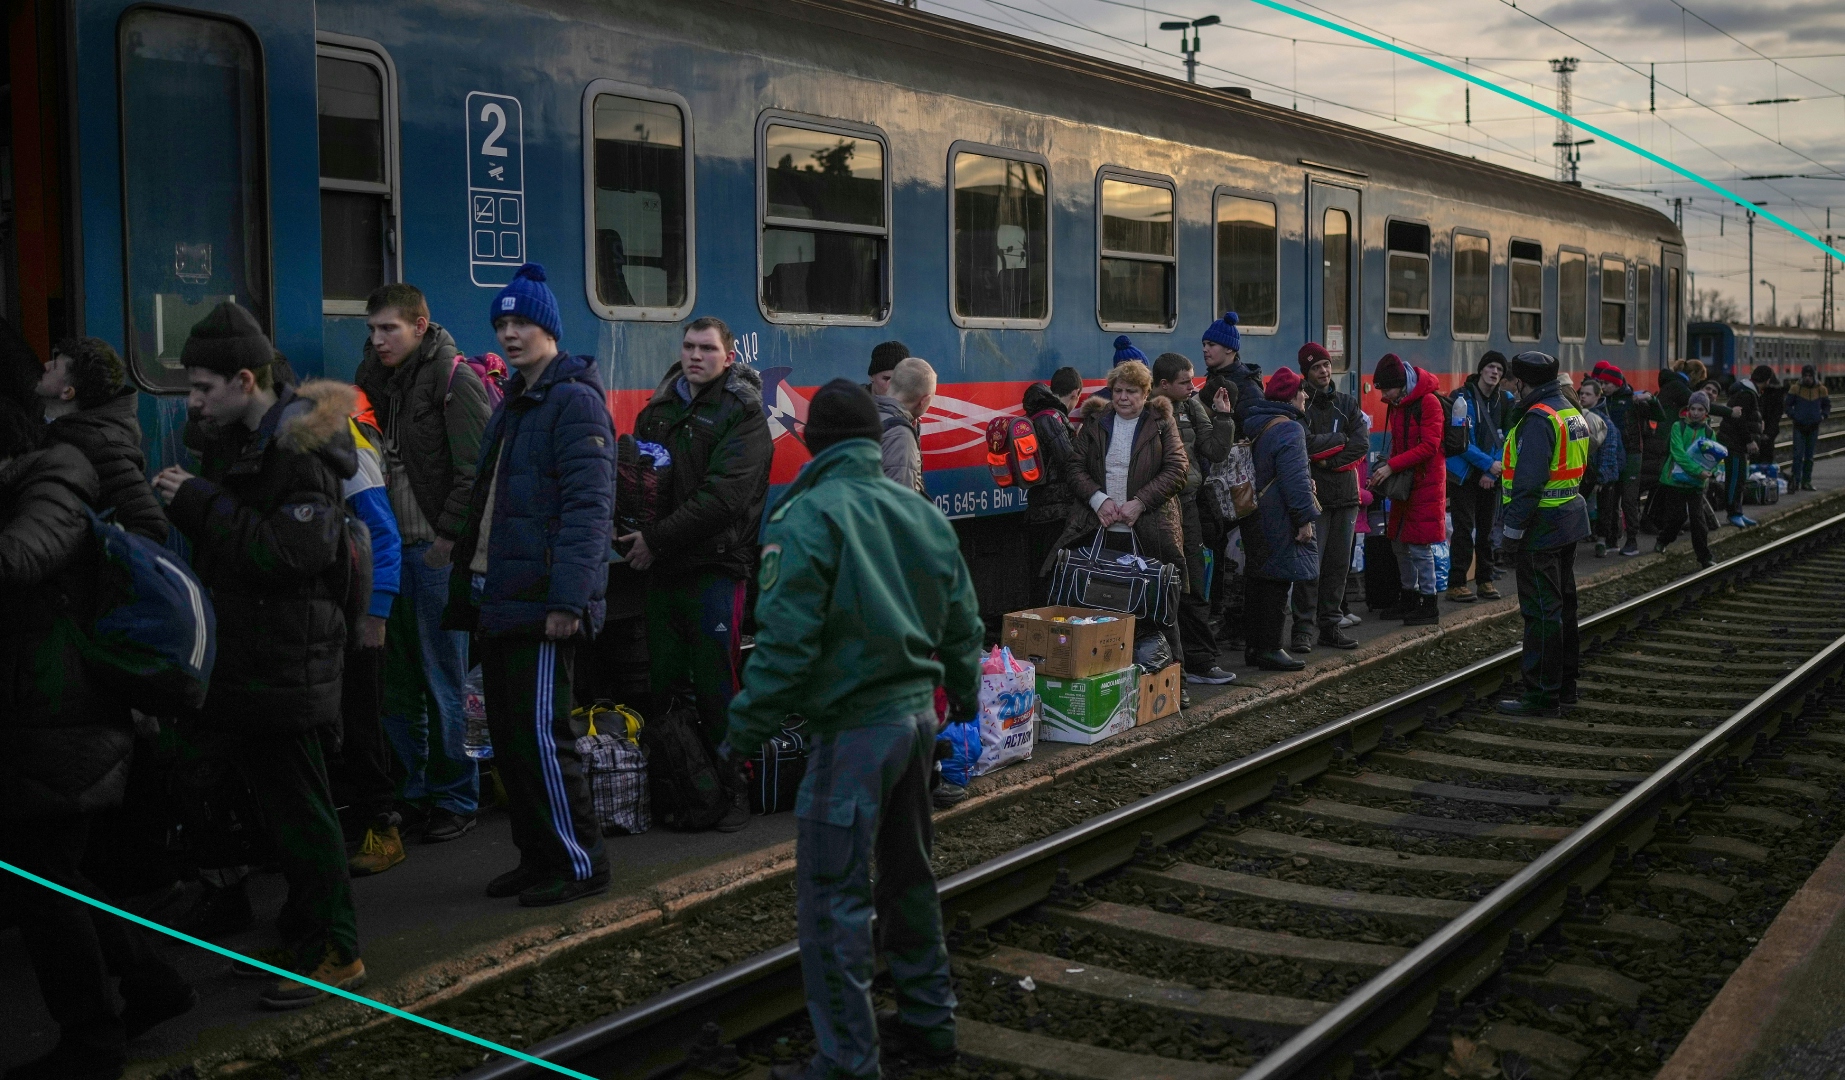 Ukrainian refugees waiting outside of a train